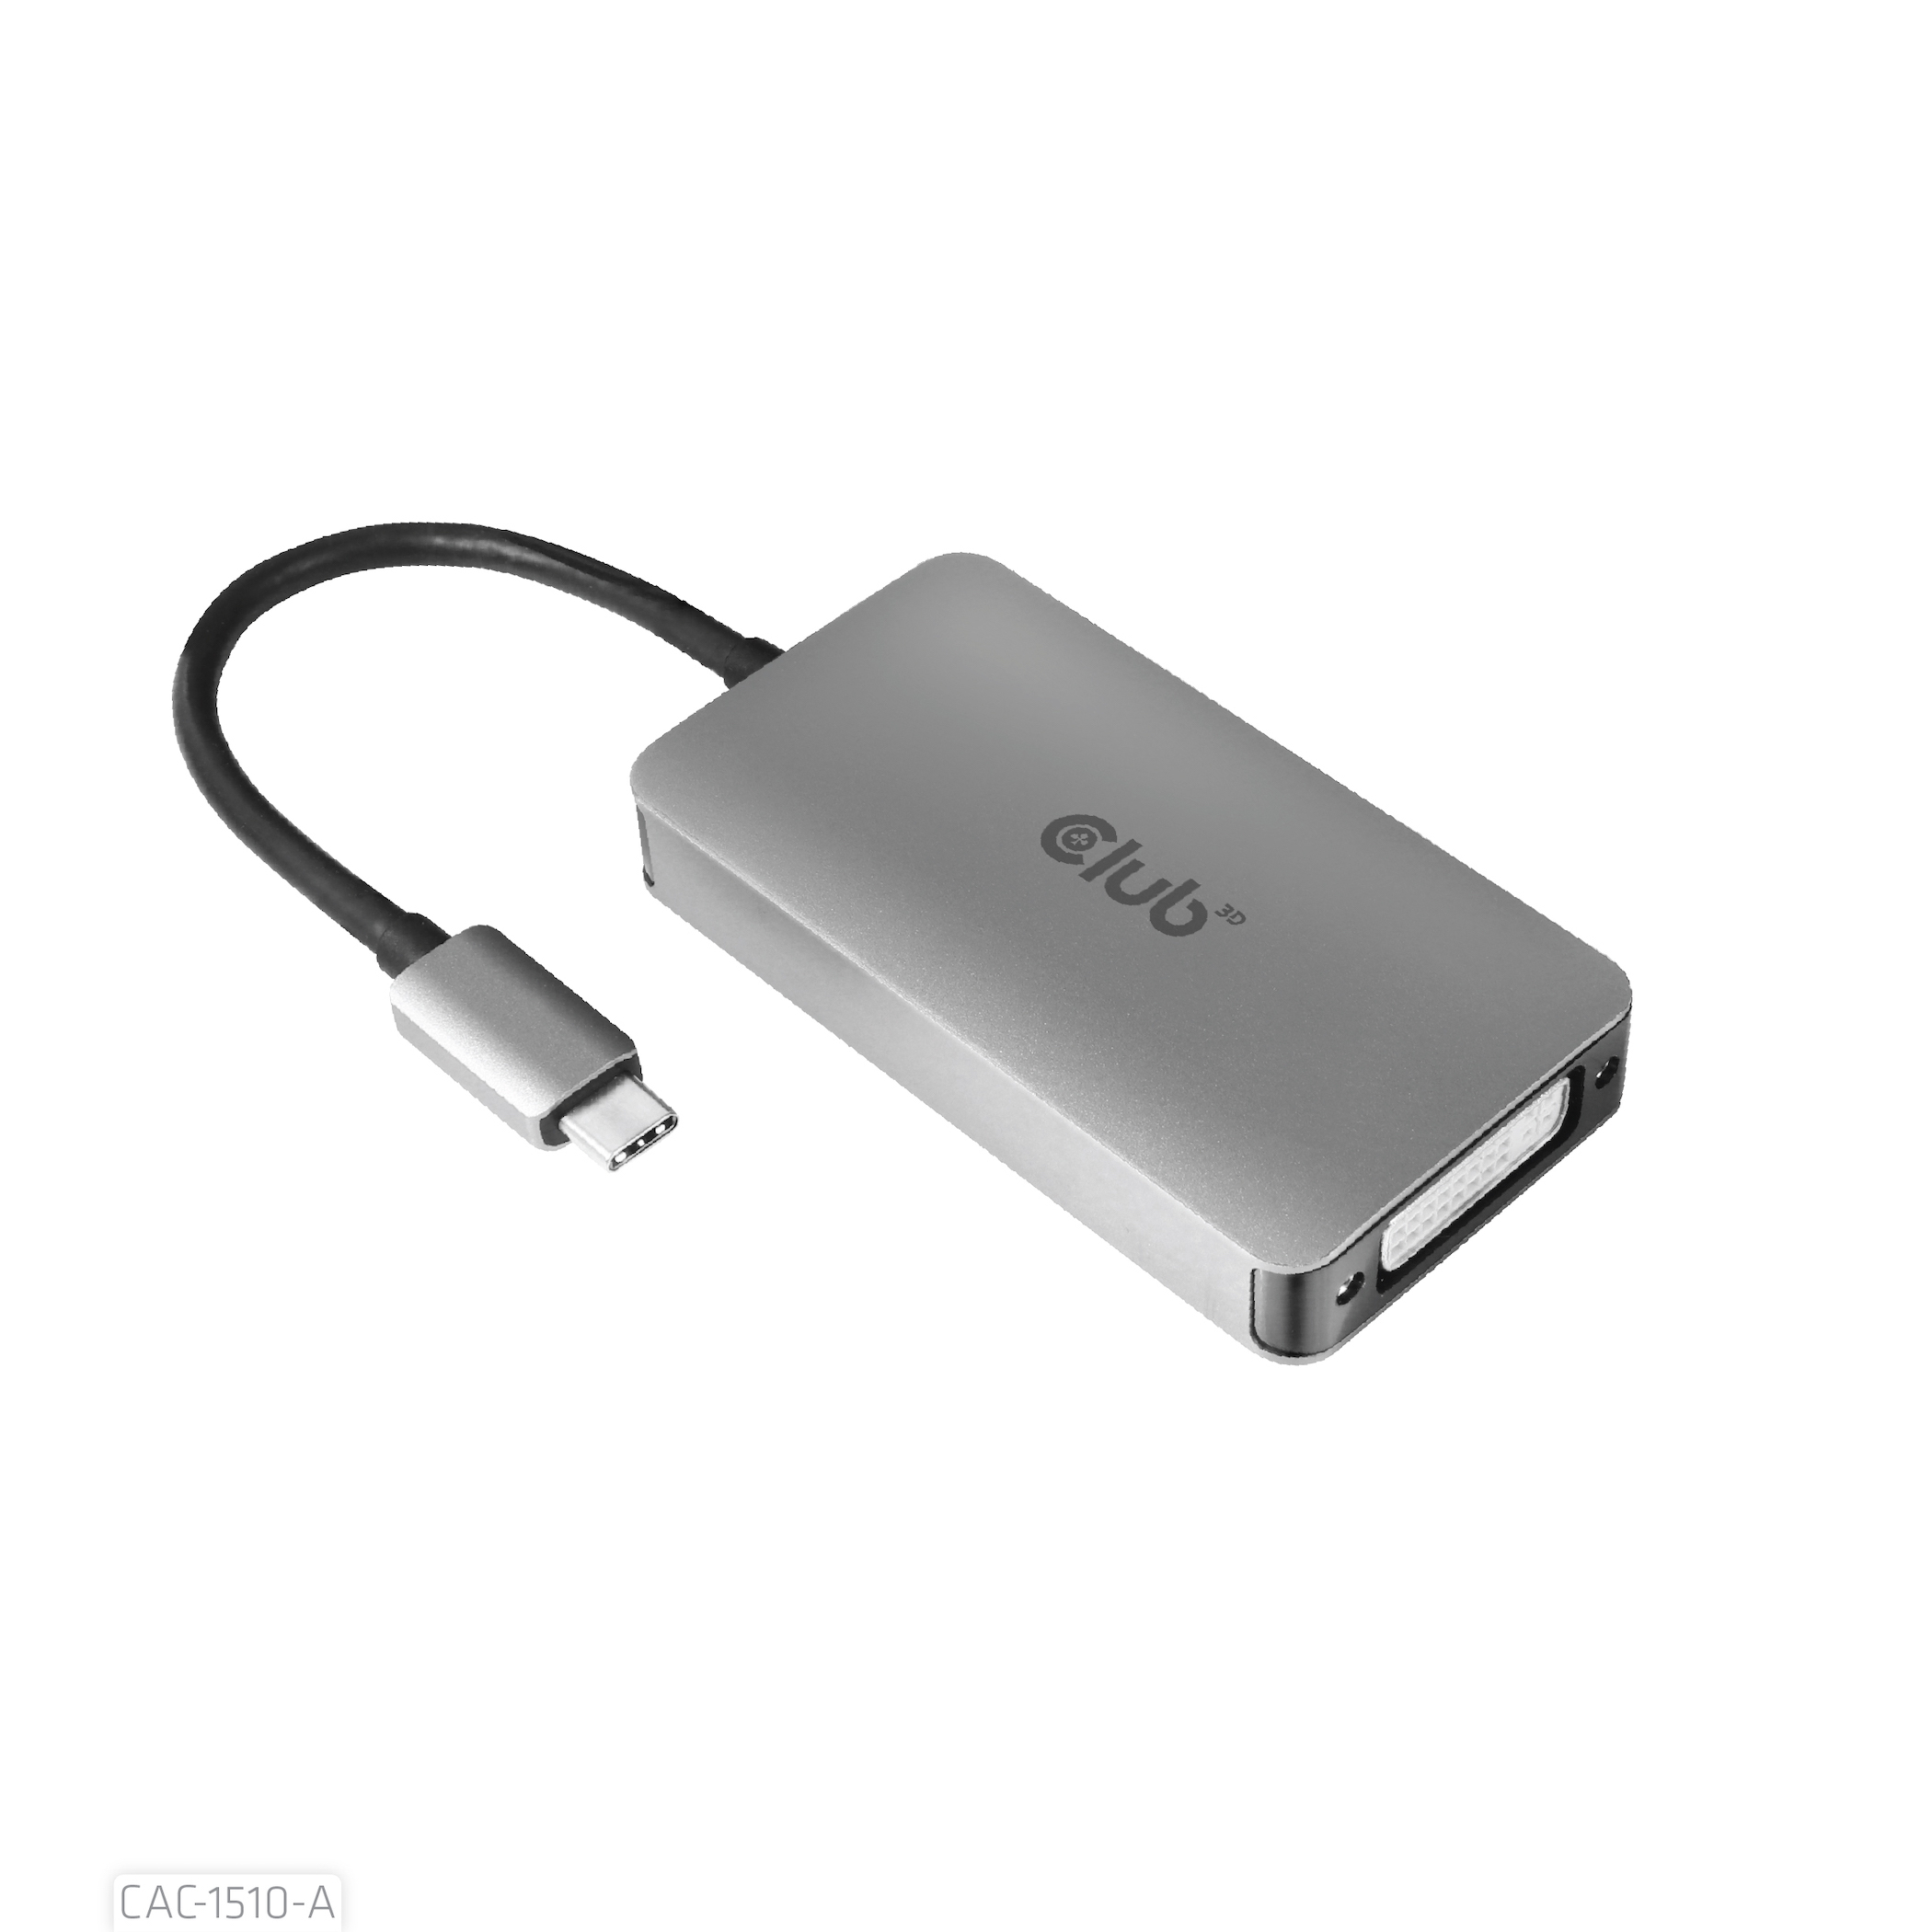 USB3.2 Gen1 Type-C to Dual Link DVI-D HDCP OFF  For Apple Cinema Displays